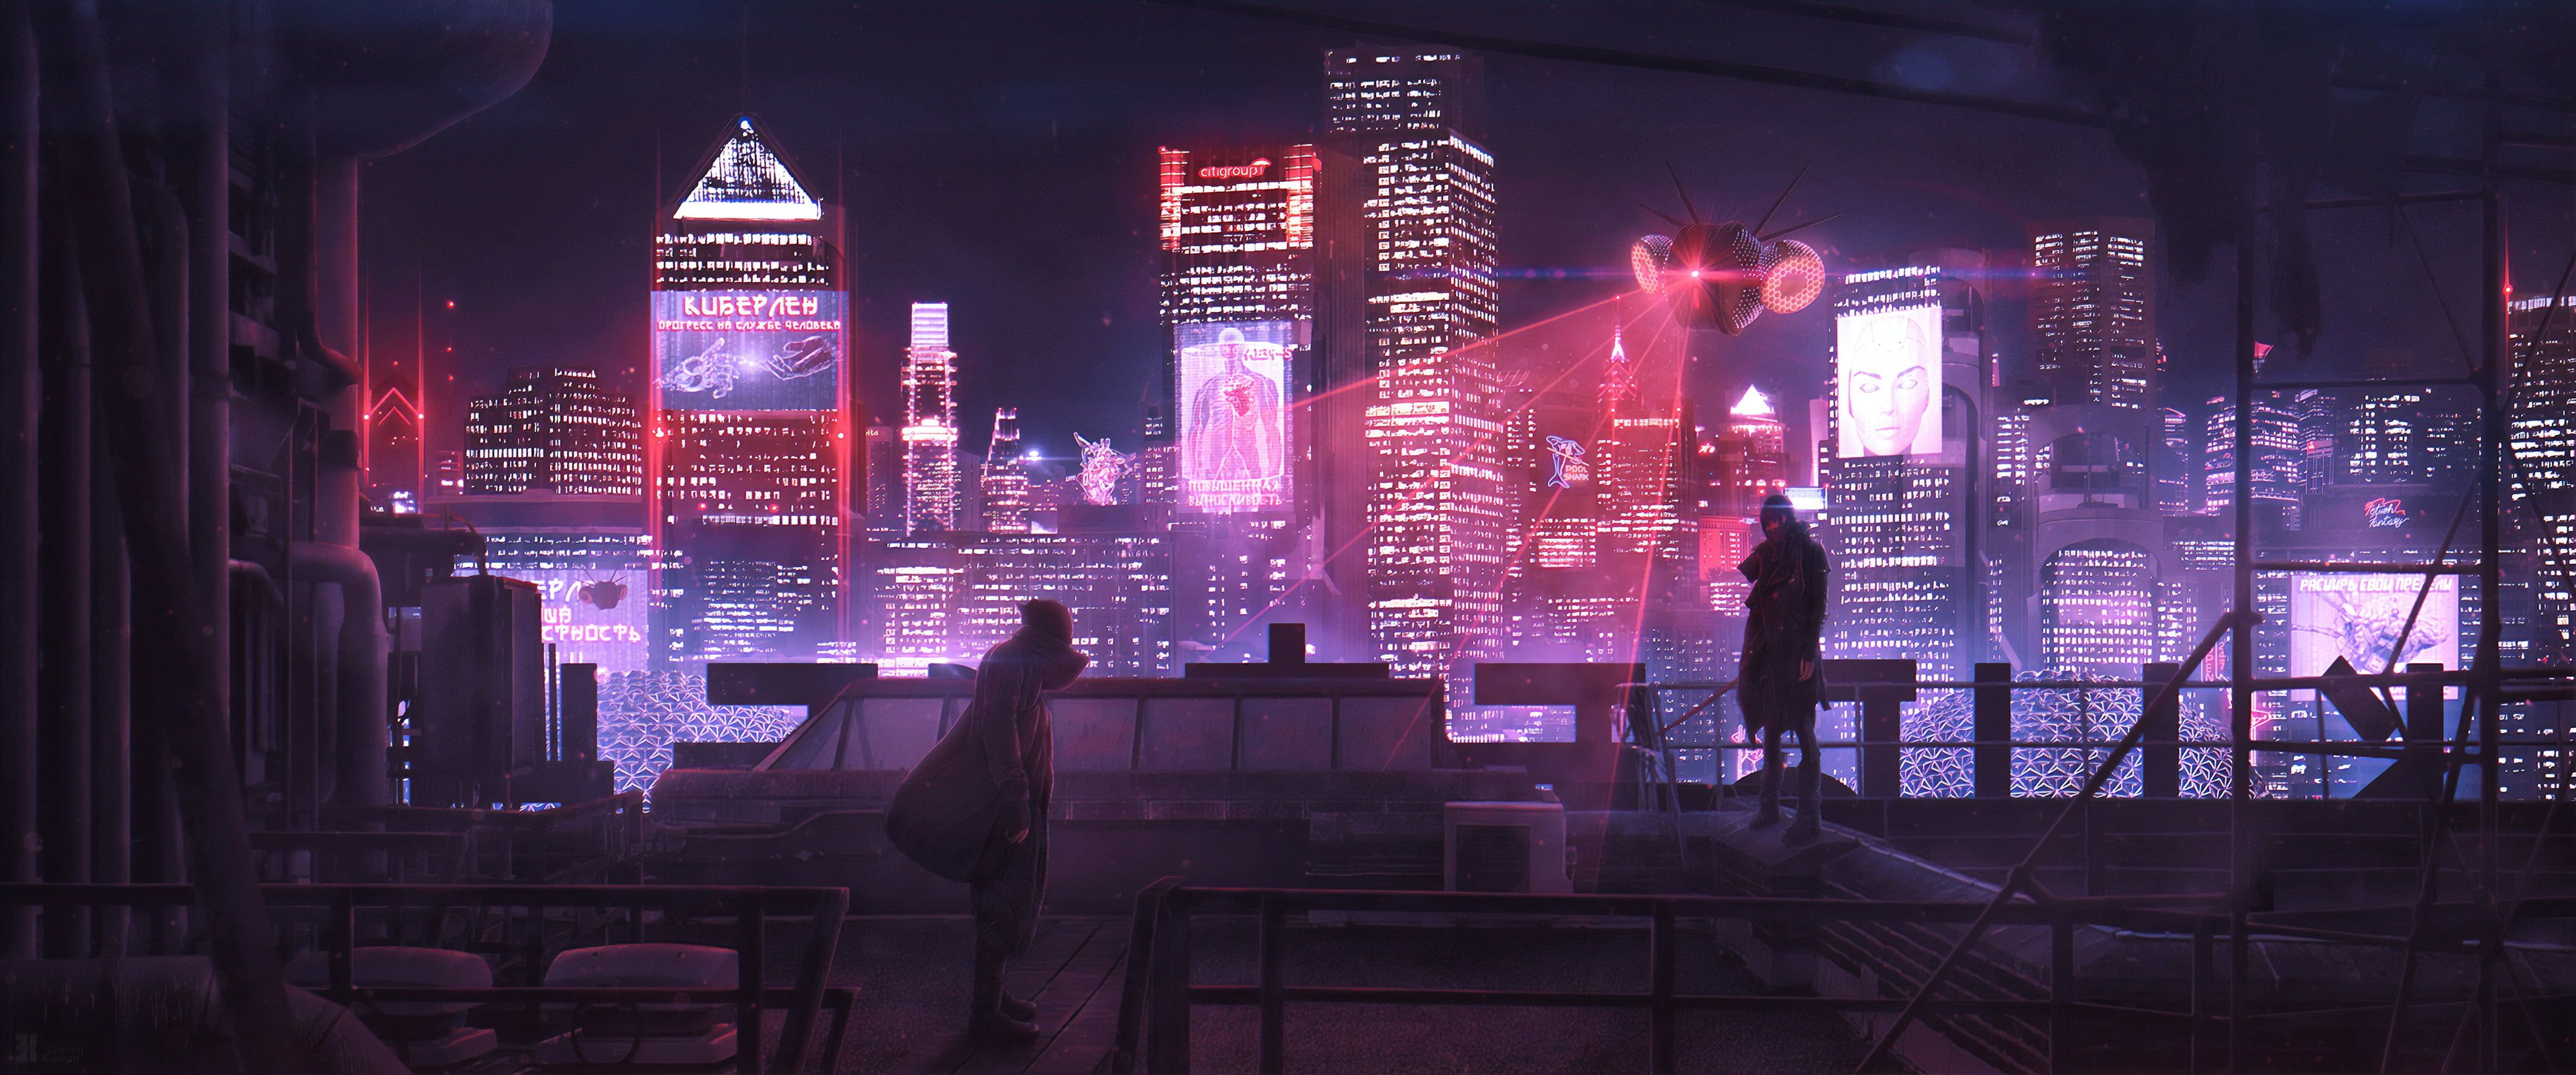 Sci Fi Cyberpunk City Futuristic People Skyscraper 4k